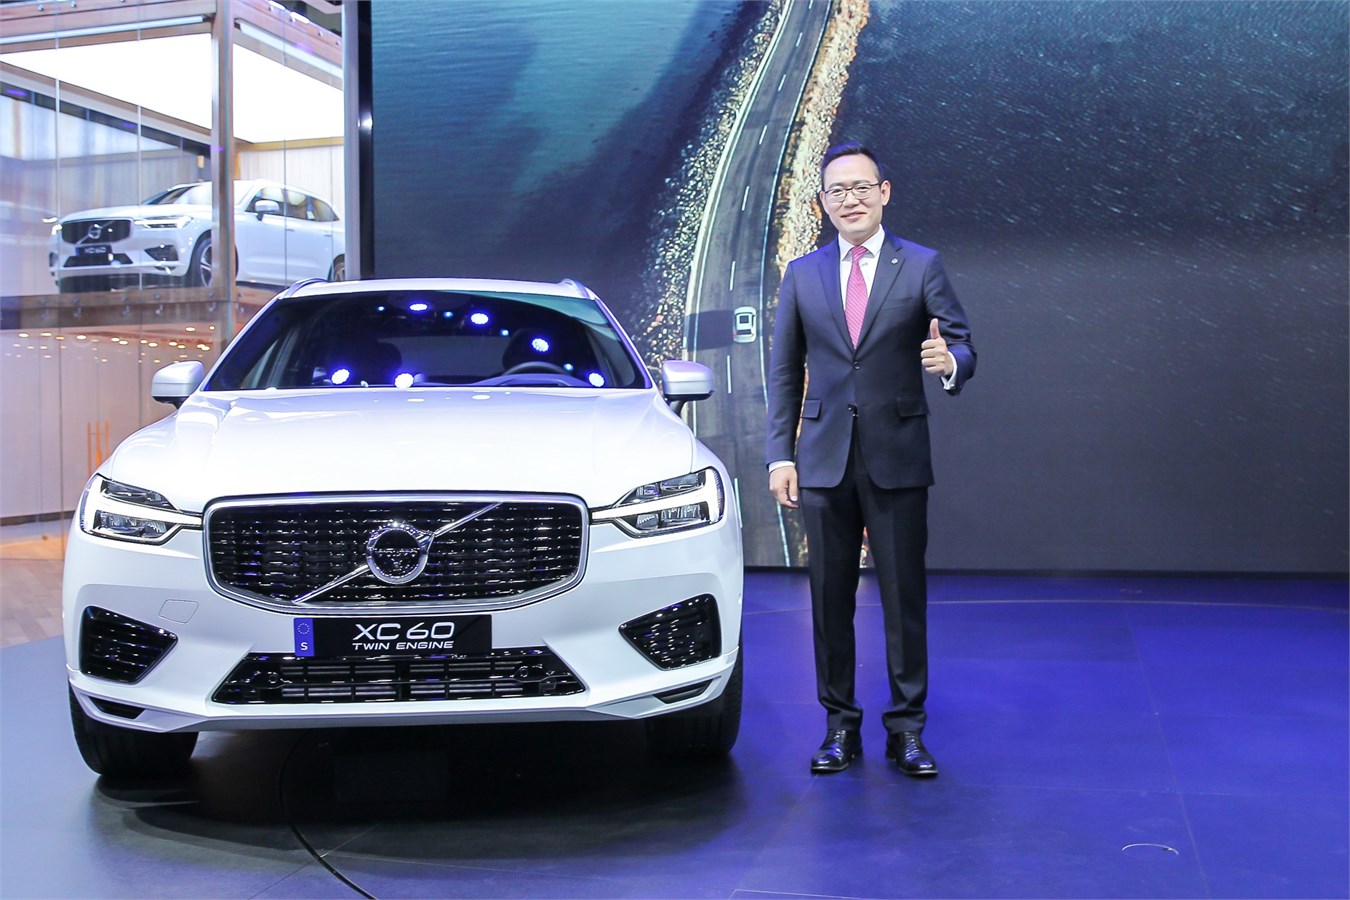 沃尔沃汽车集团全球高级副总裁 亚太区总裁兼CEO袁小林先生与全新XC60合影